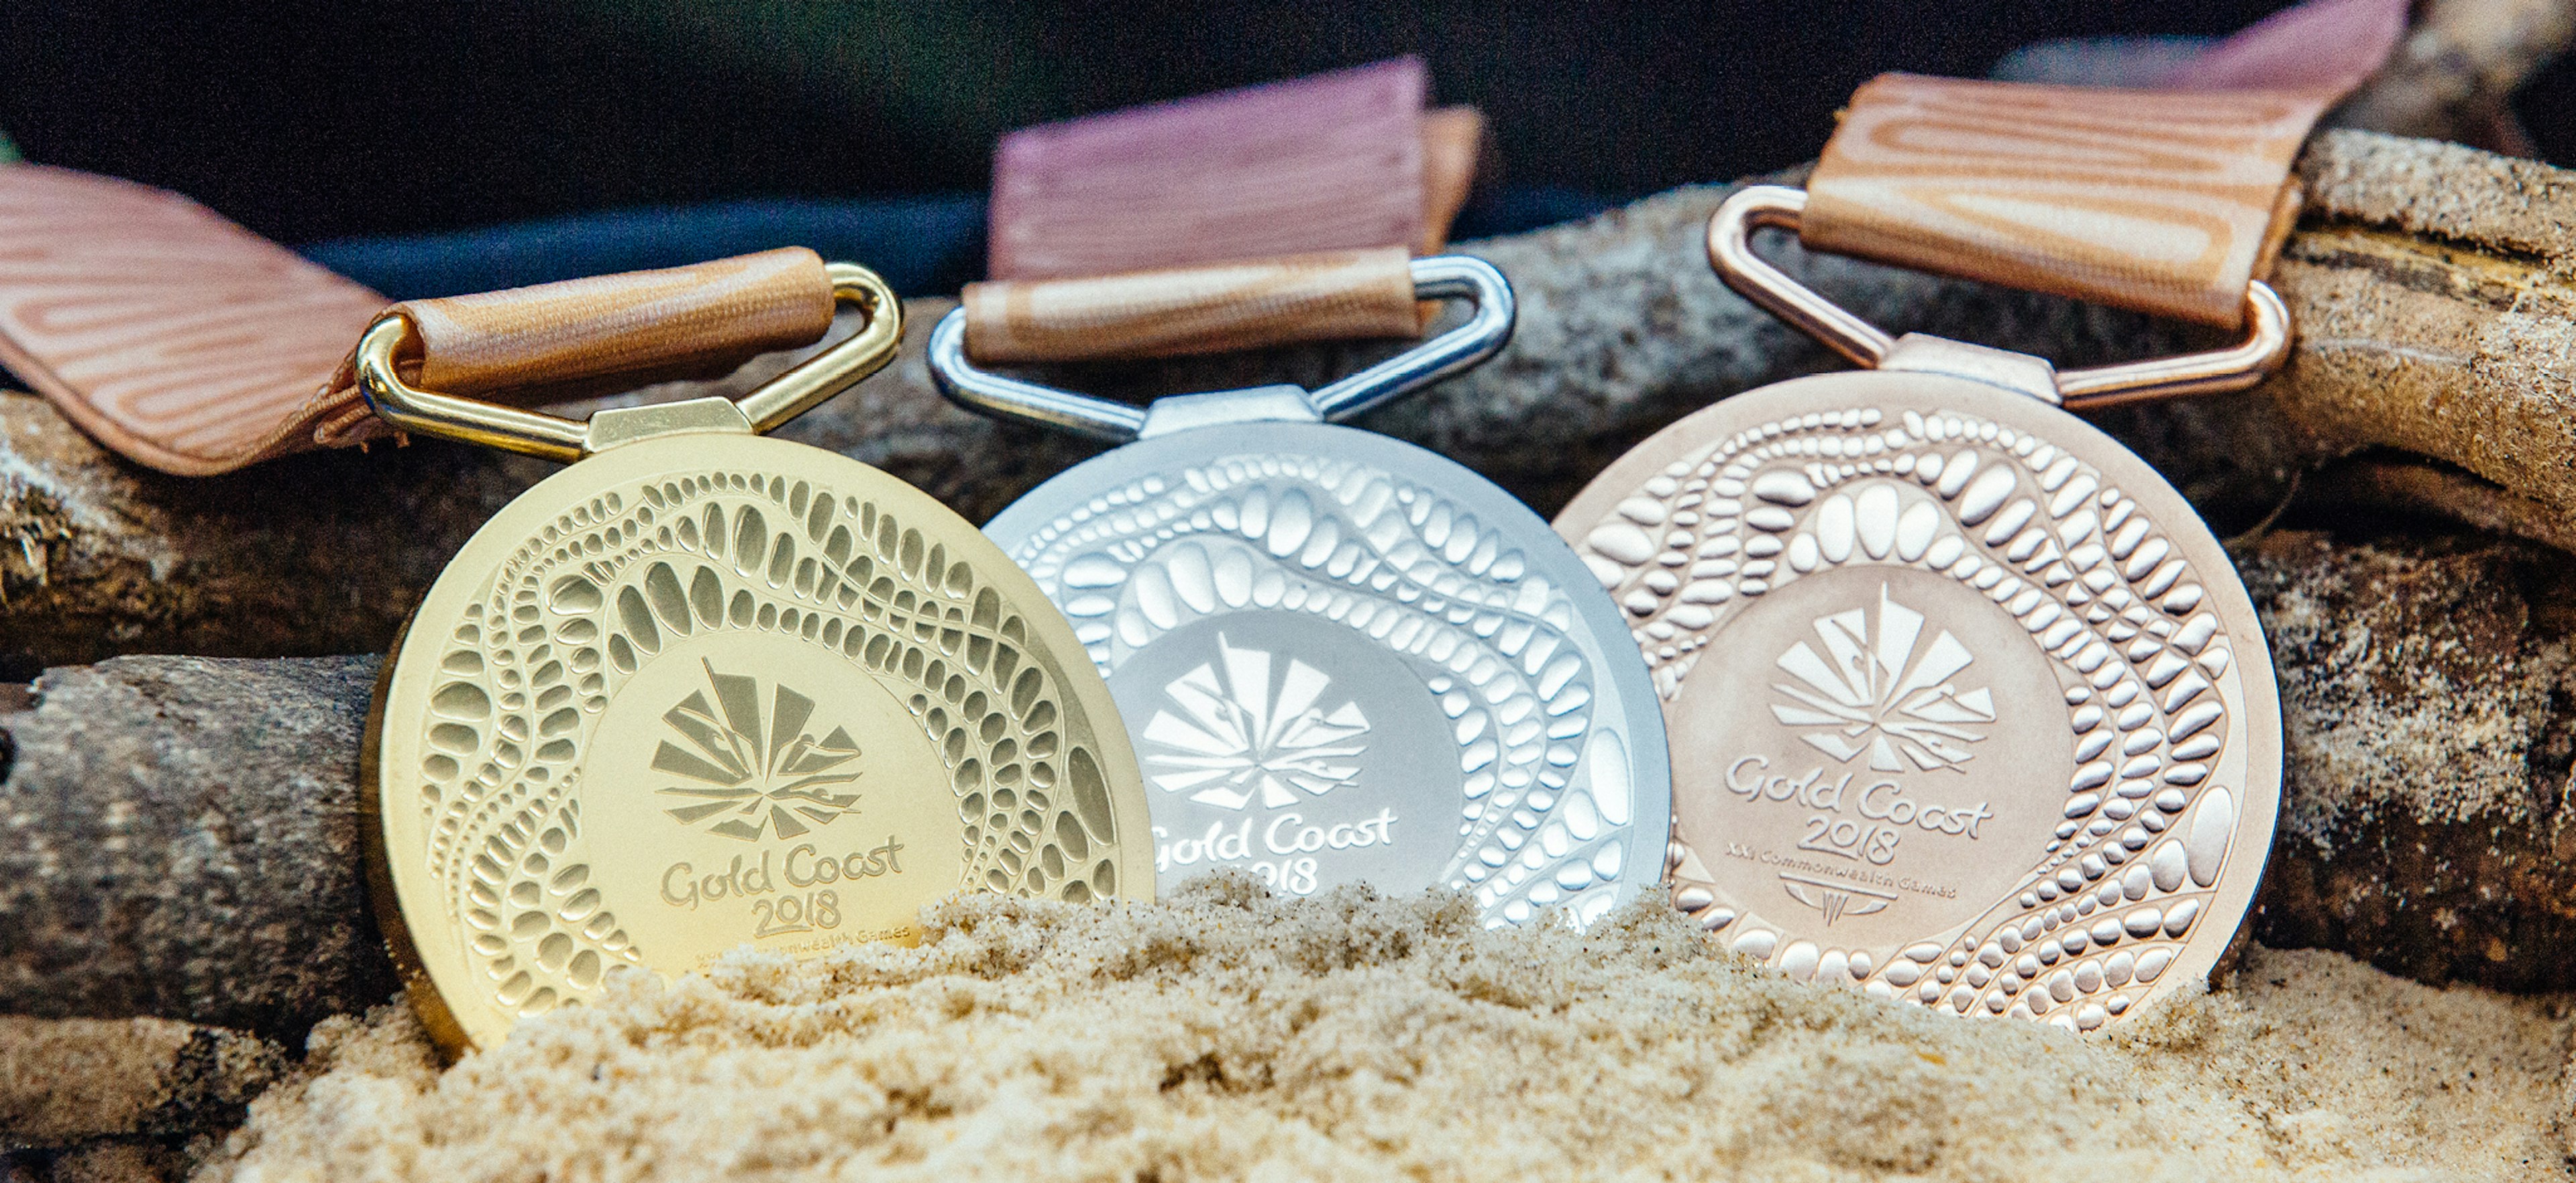 Gold Coast 2018 medal design revealed